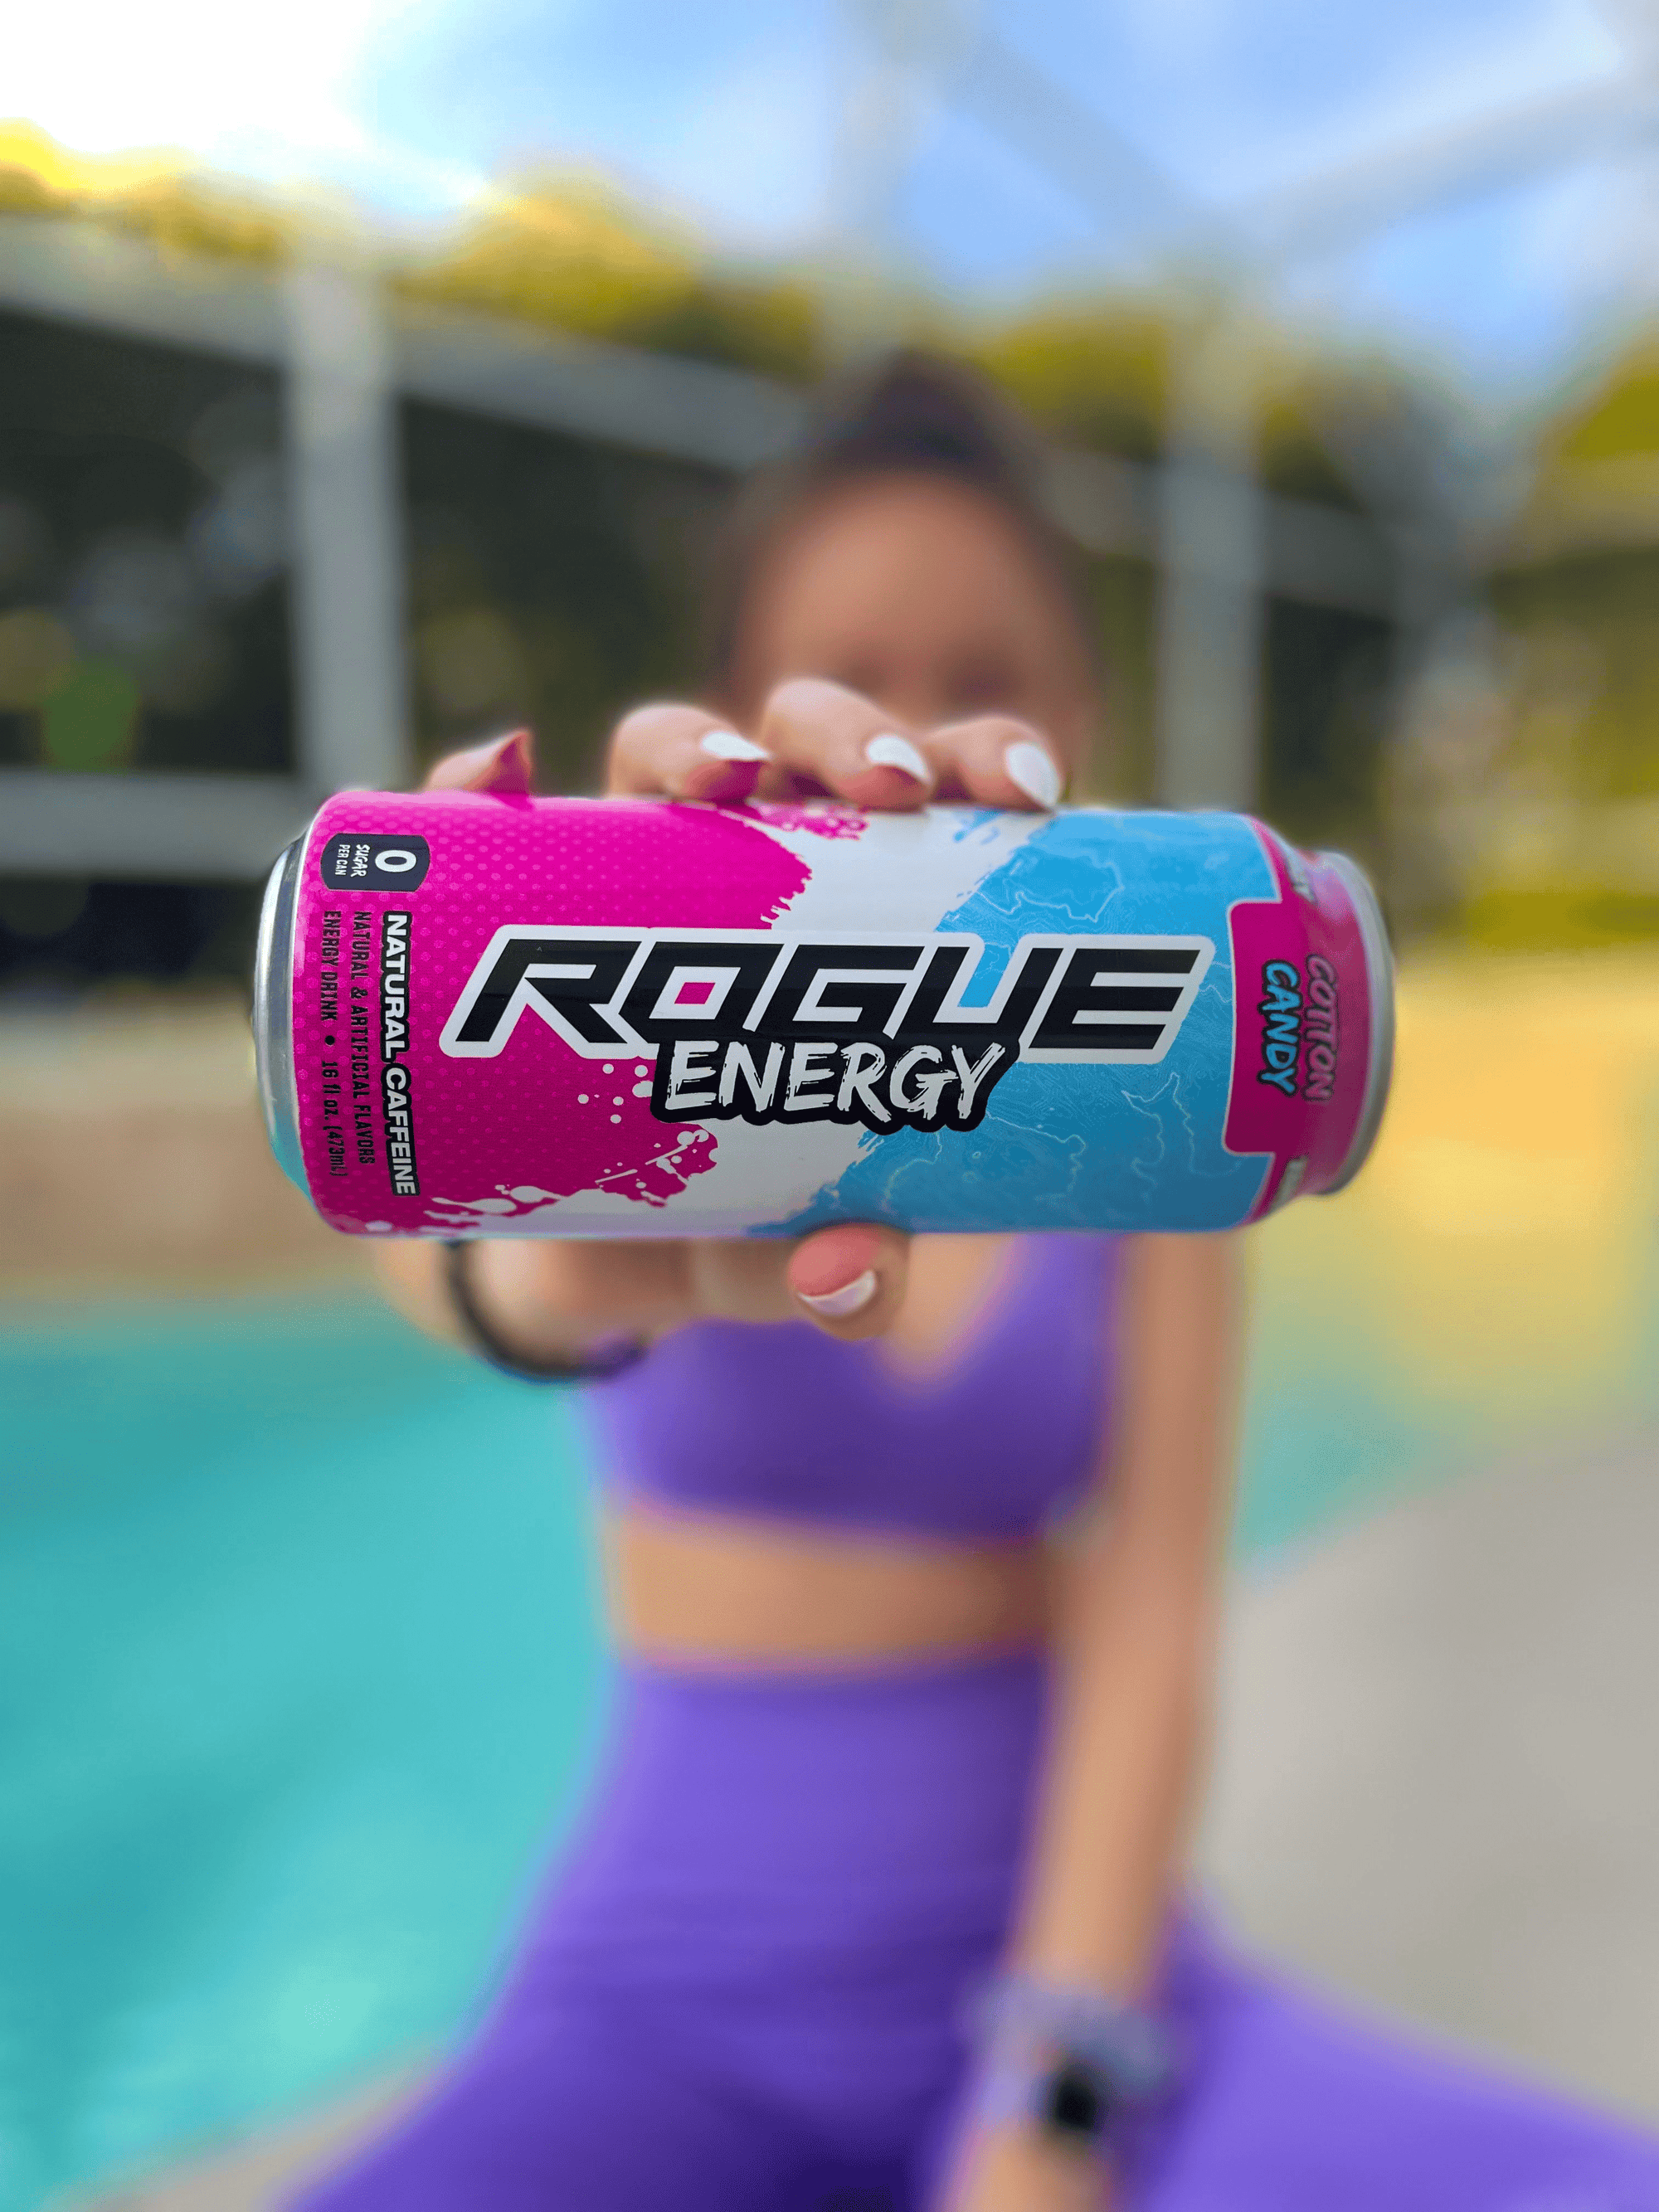 Rogue Energy Premium Energy Drinks Healthy Ingredients